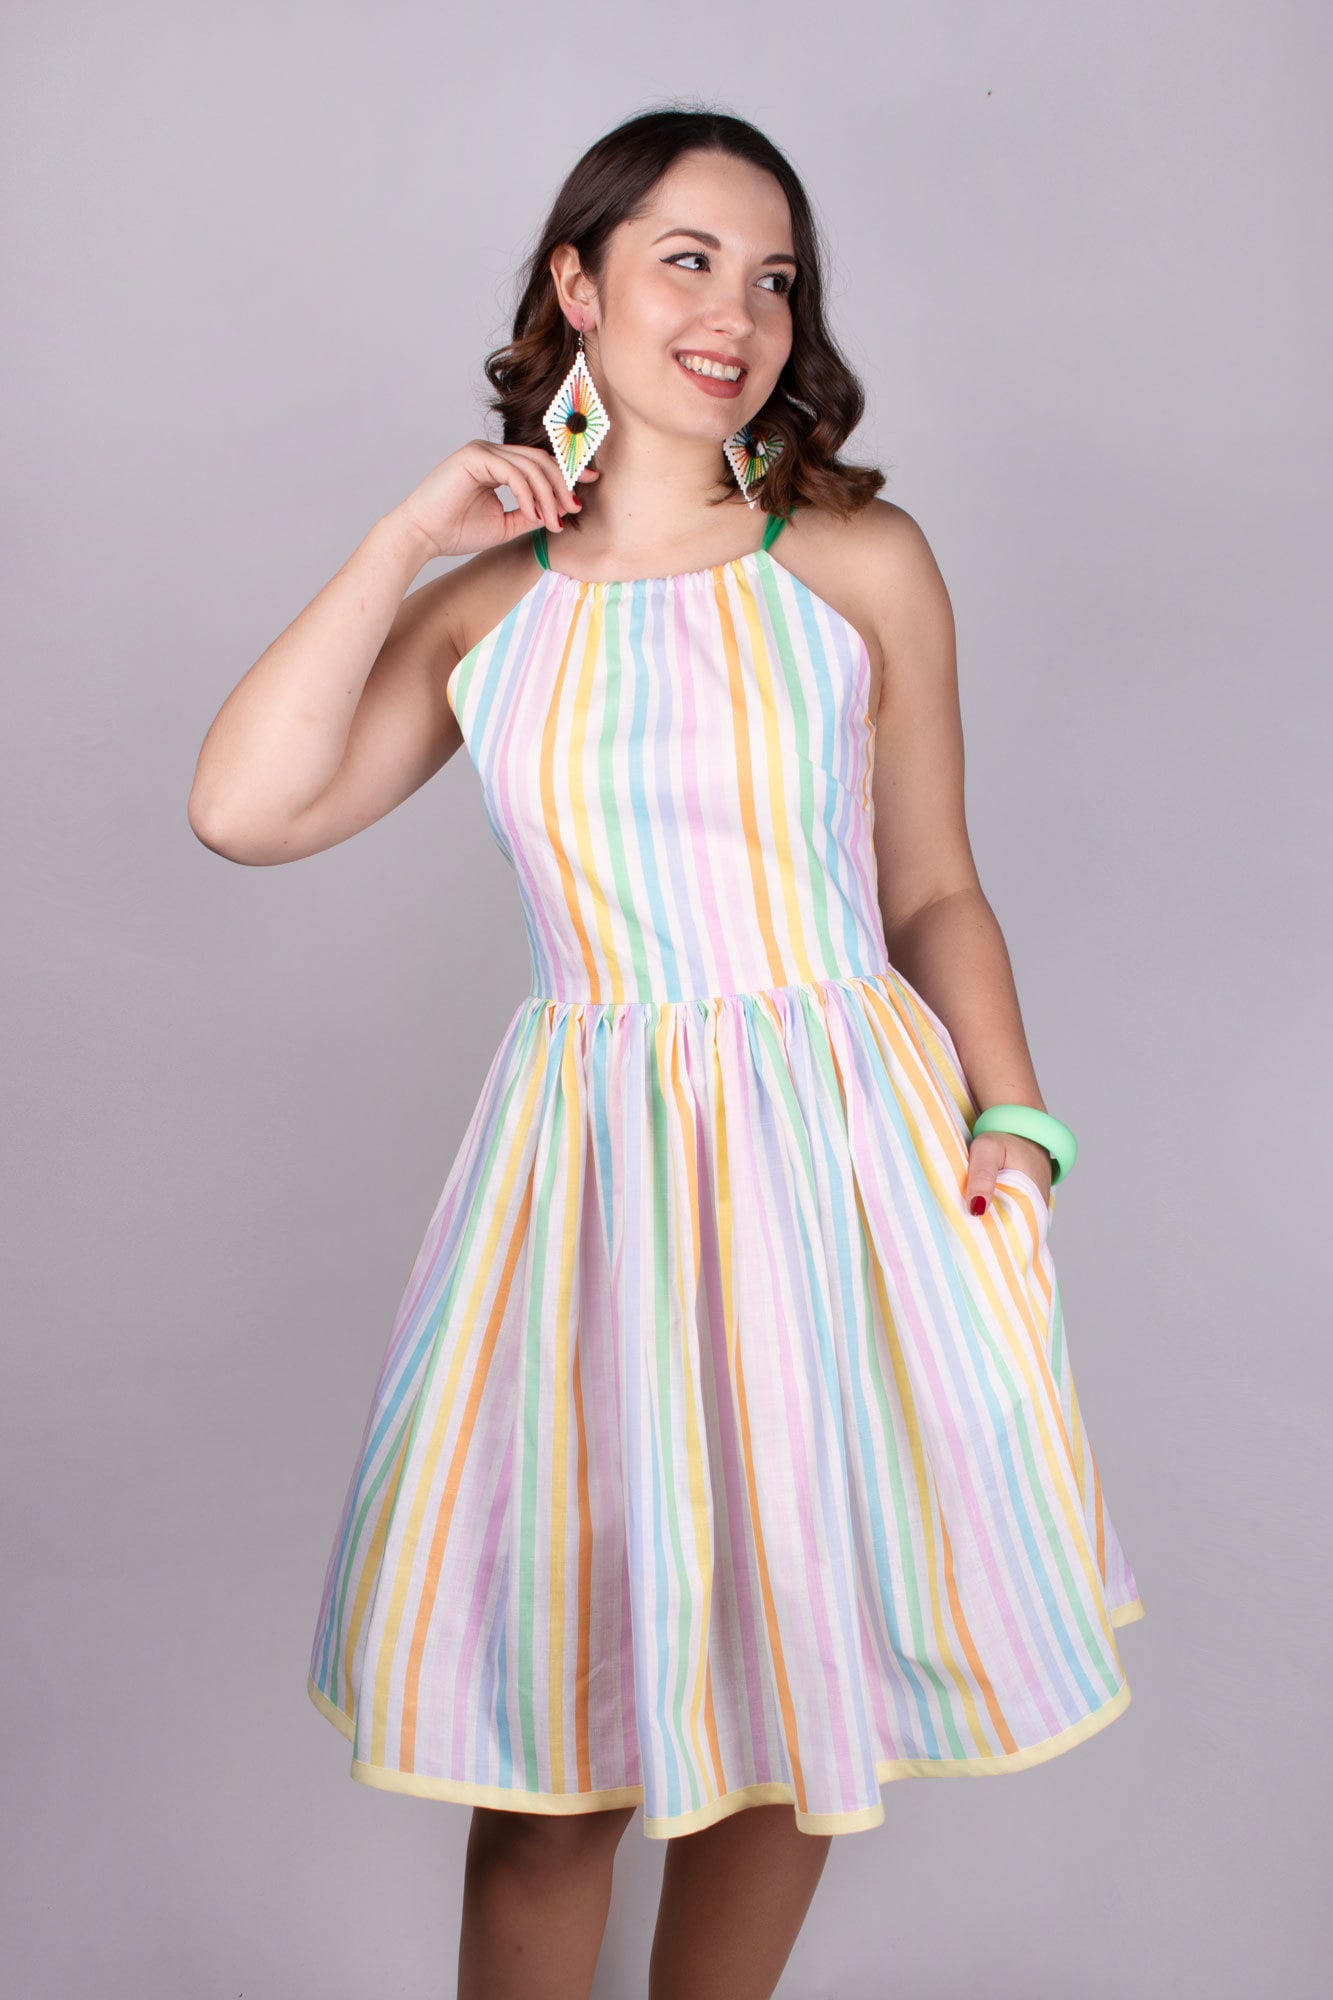 STACIE_10 Rockabilly Regenbogen Pride Kleid mit Taschen Baumwolle M